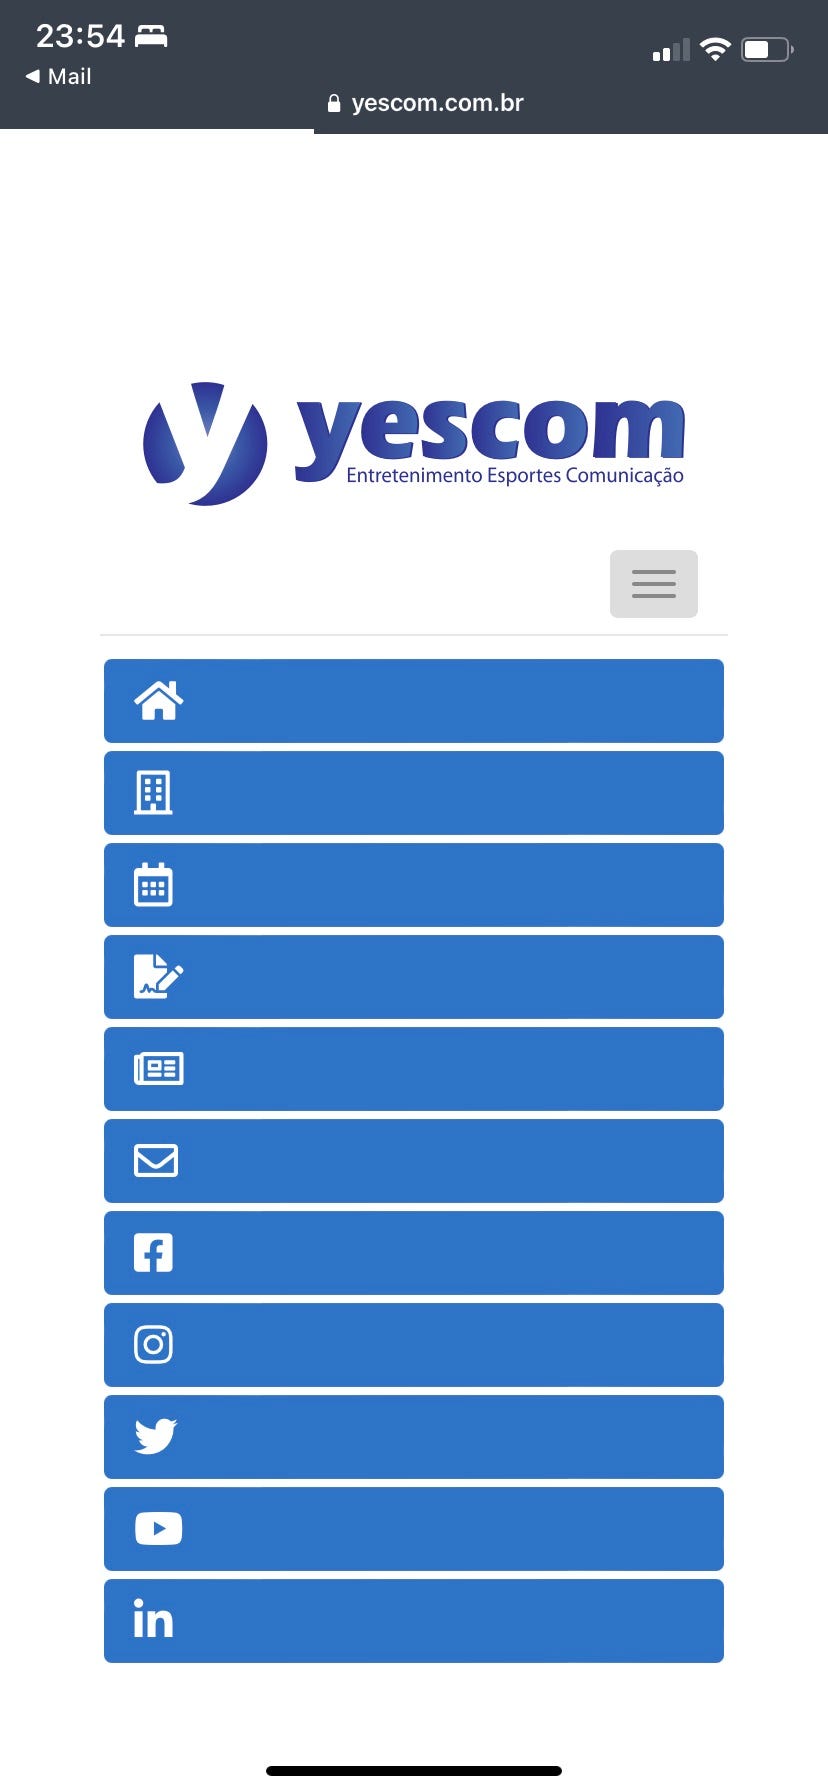 Tela de entrada da plataforma Yescom, em que o direcionamento do menu é feito apenas através de ícones, sem o apoio de Título das seções.